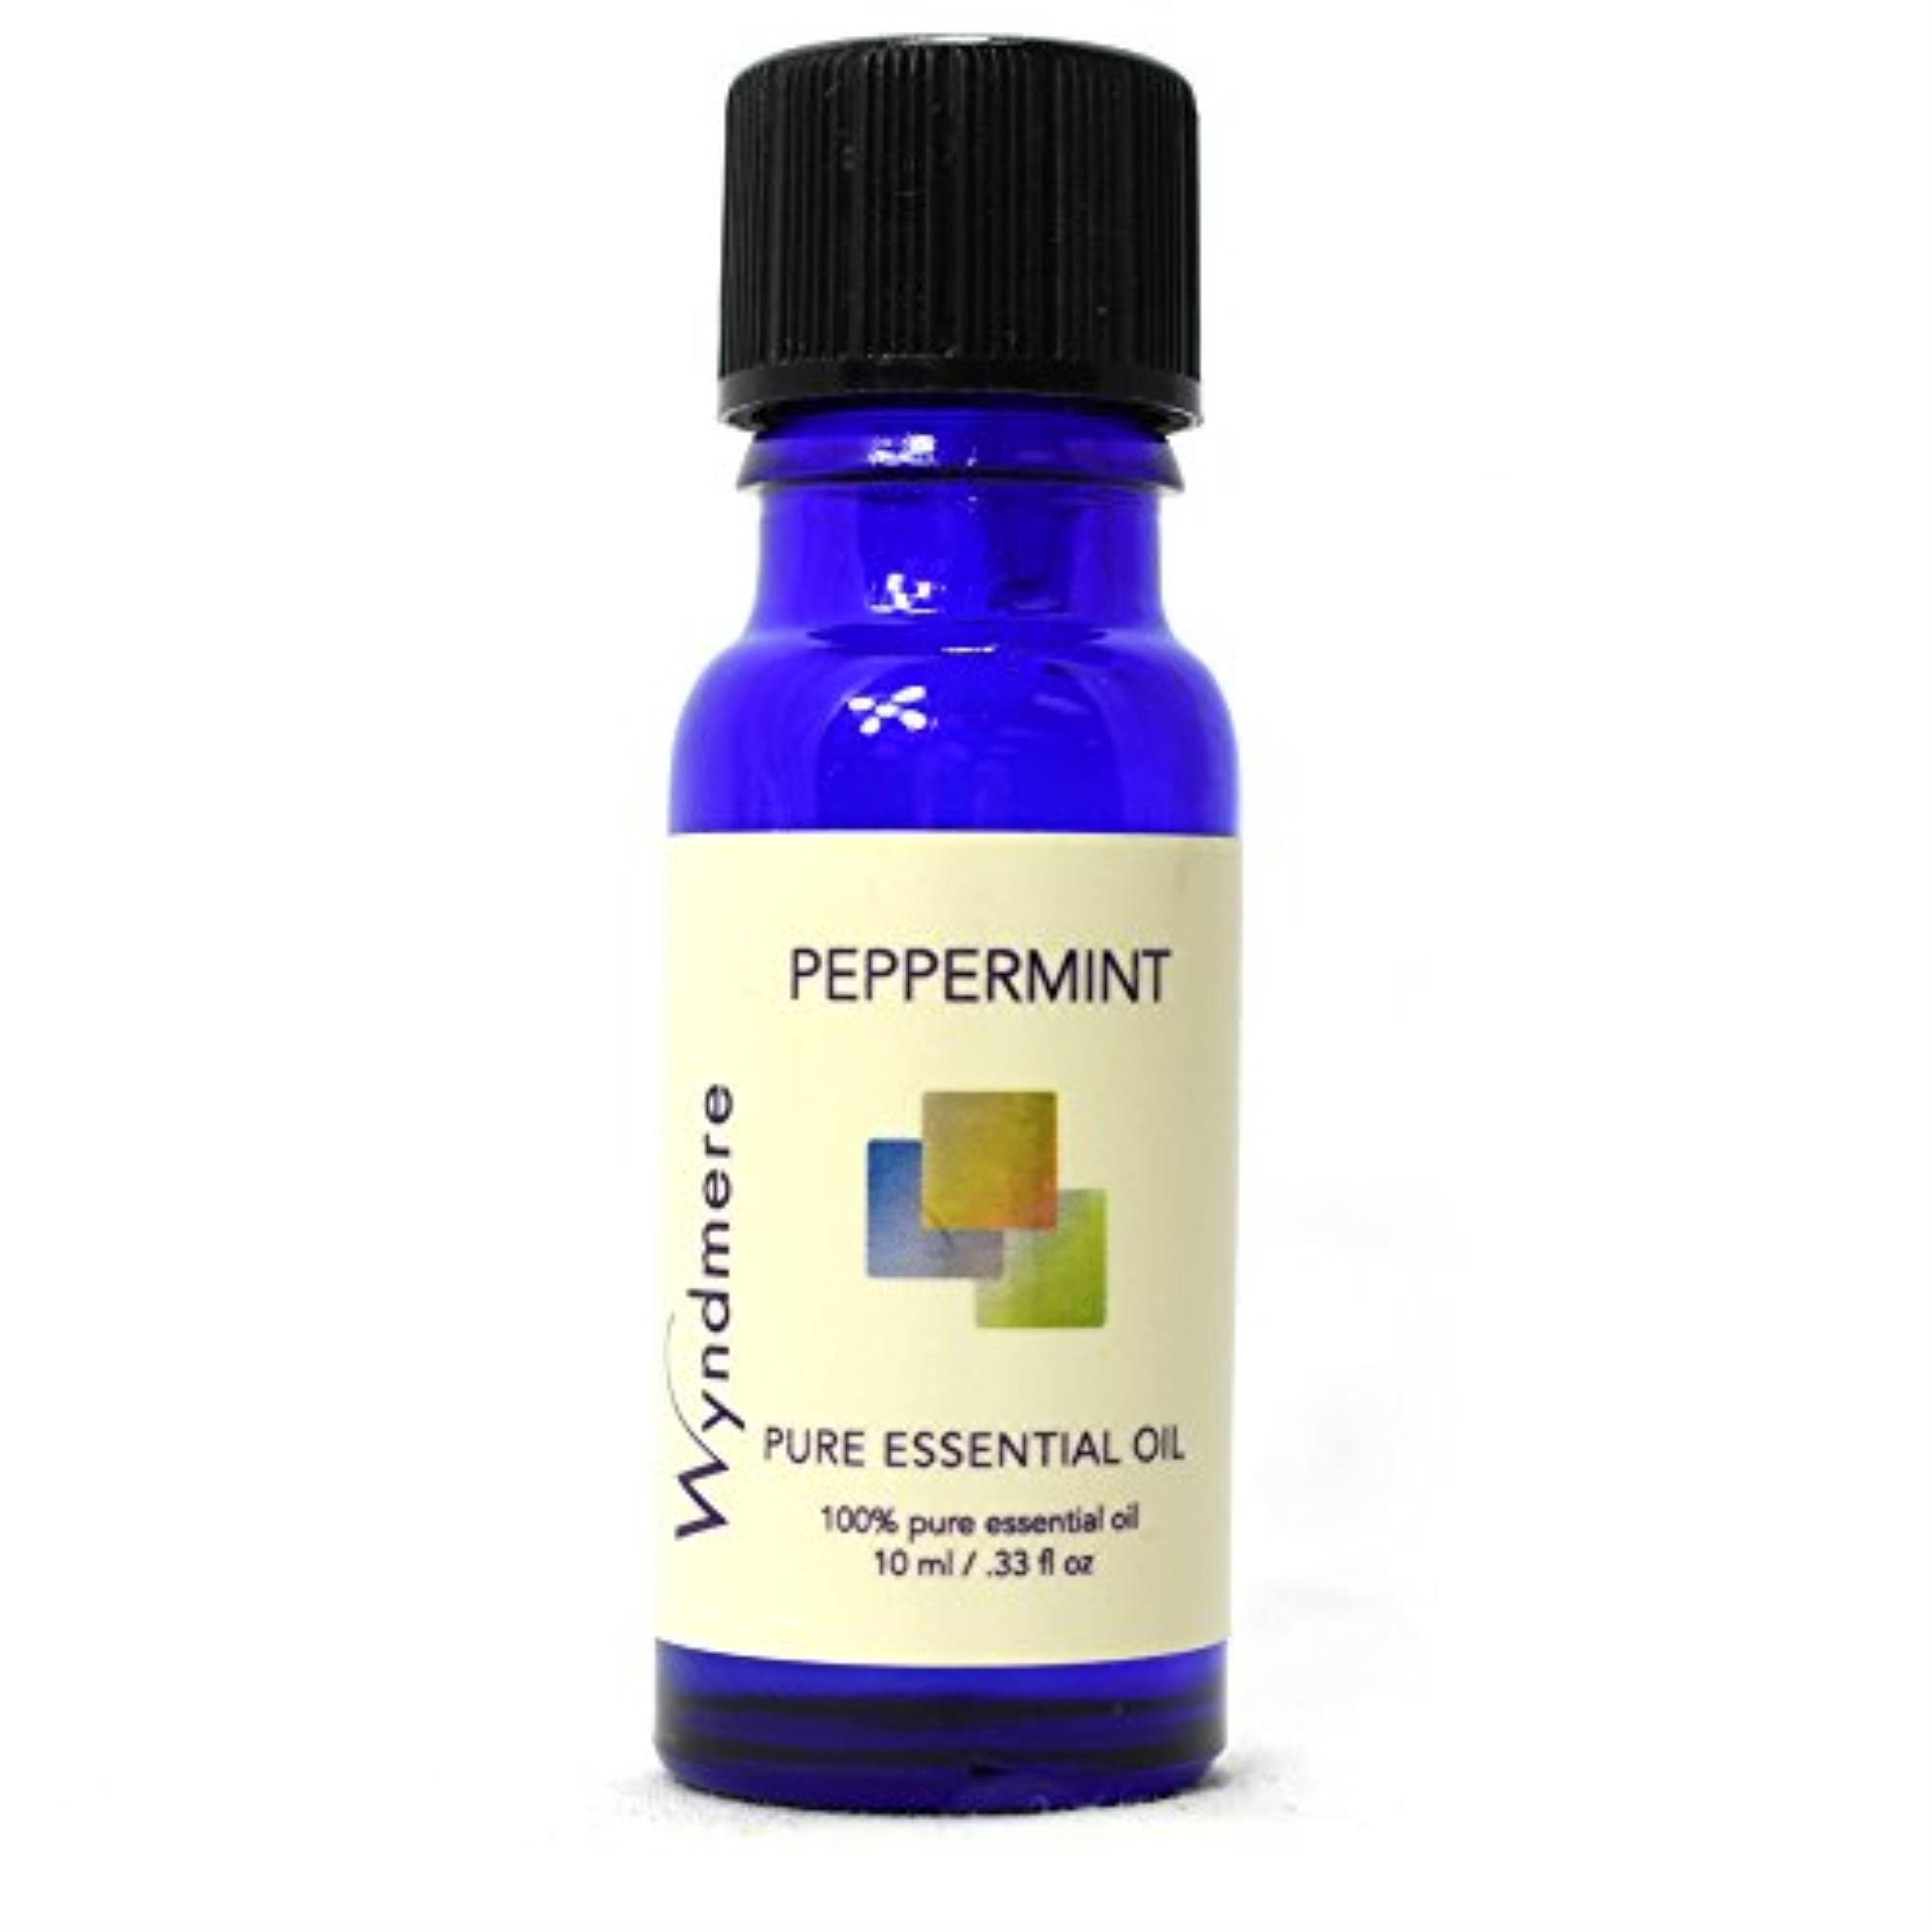 Wyndmere Peppermint Essential Oil 10 ml